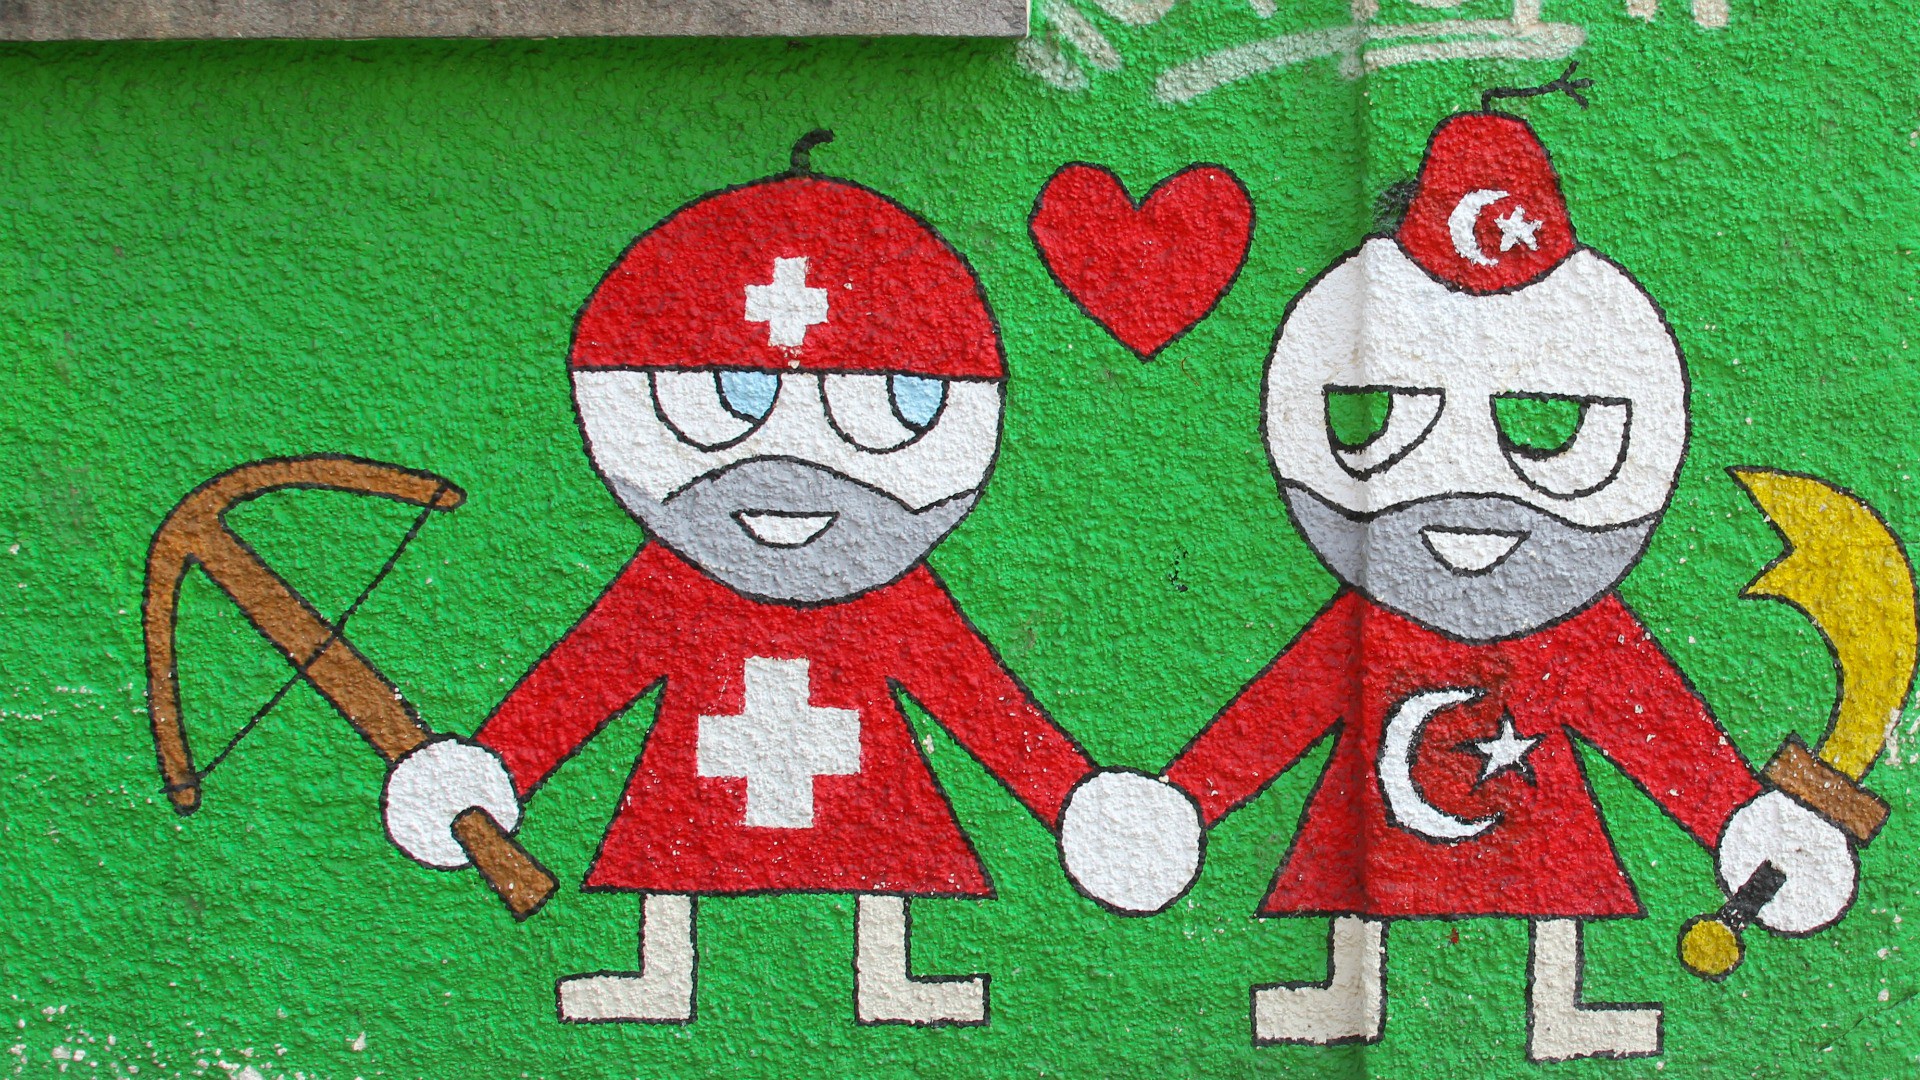 Coexistence islamo-chrétienne en Suisse (Photo: flickr/amishpatel/cc)